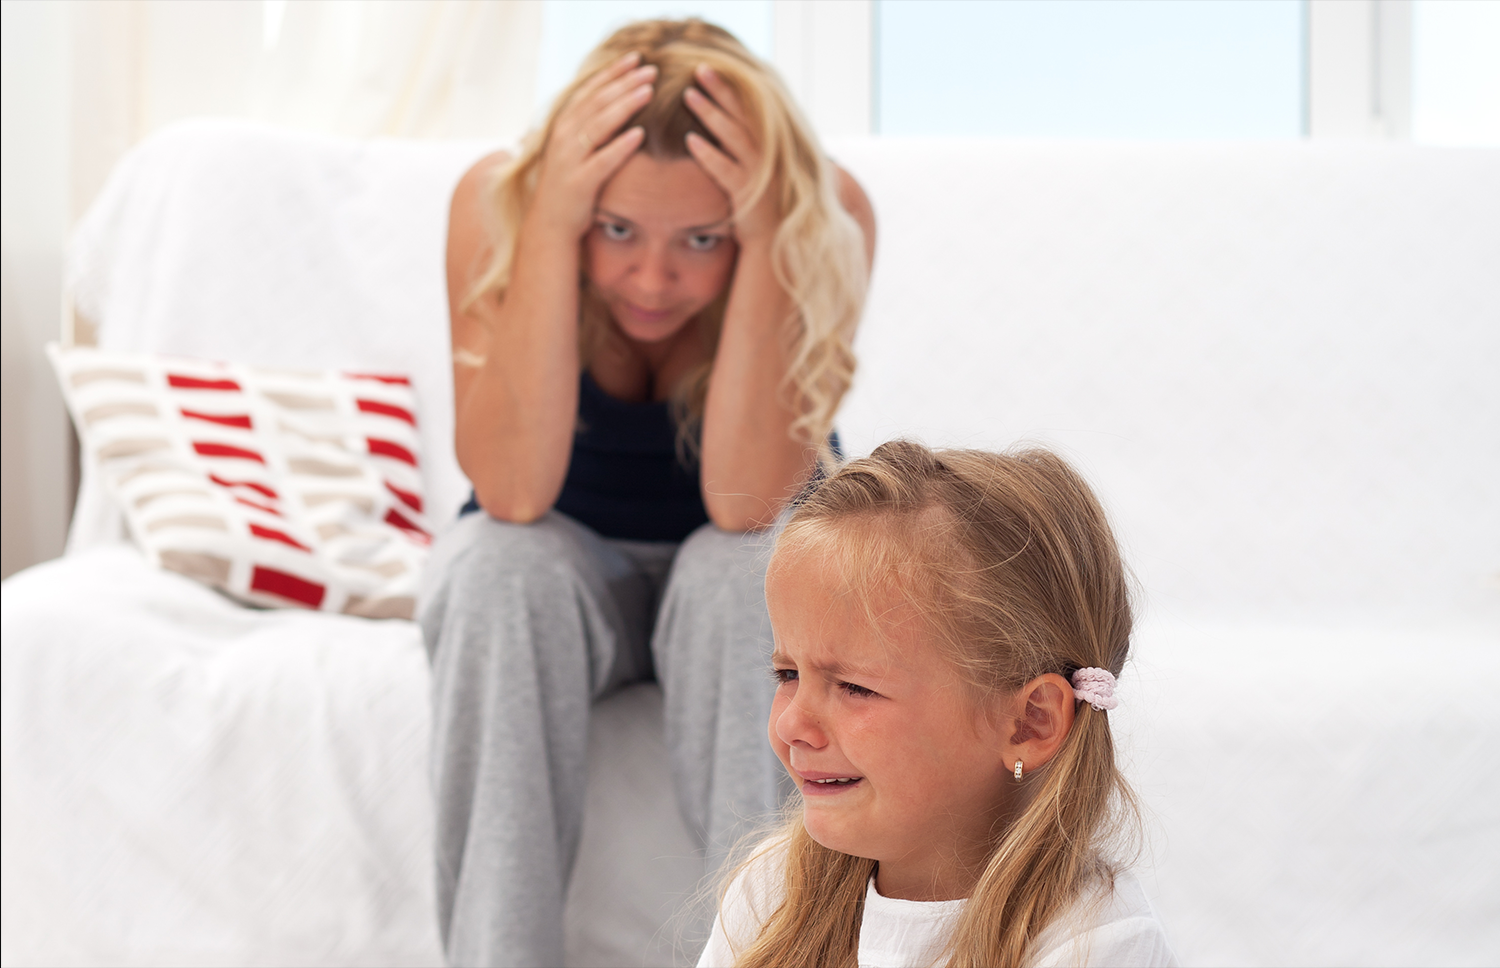 Почему ребенок капризничает: причины и что делать, советы психологов